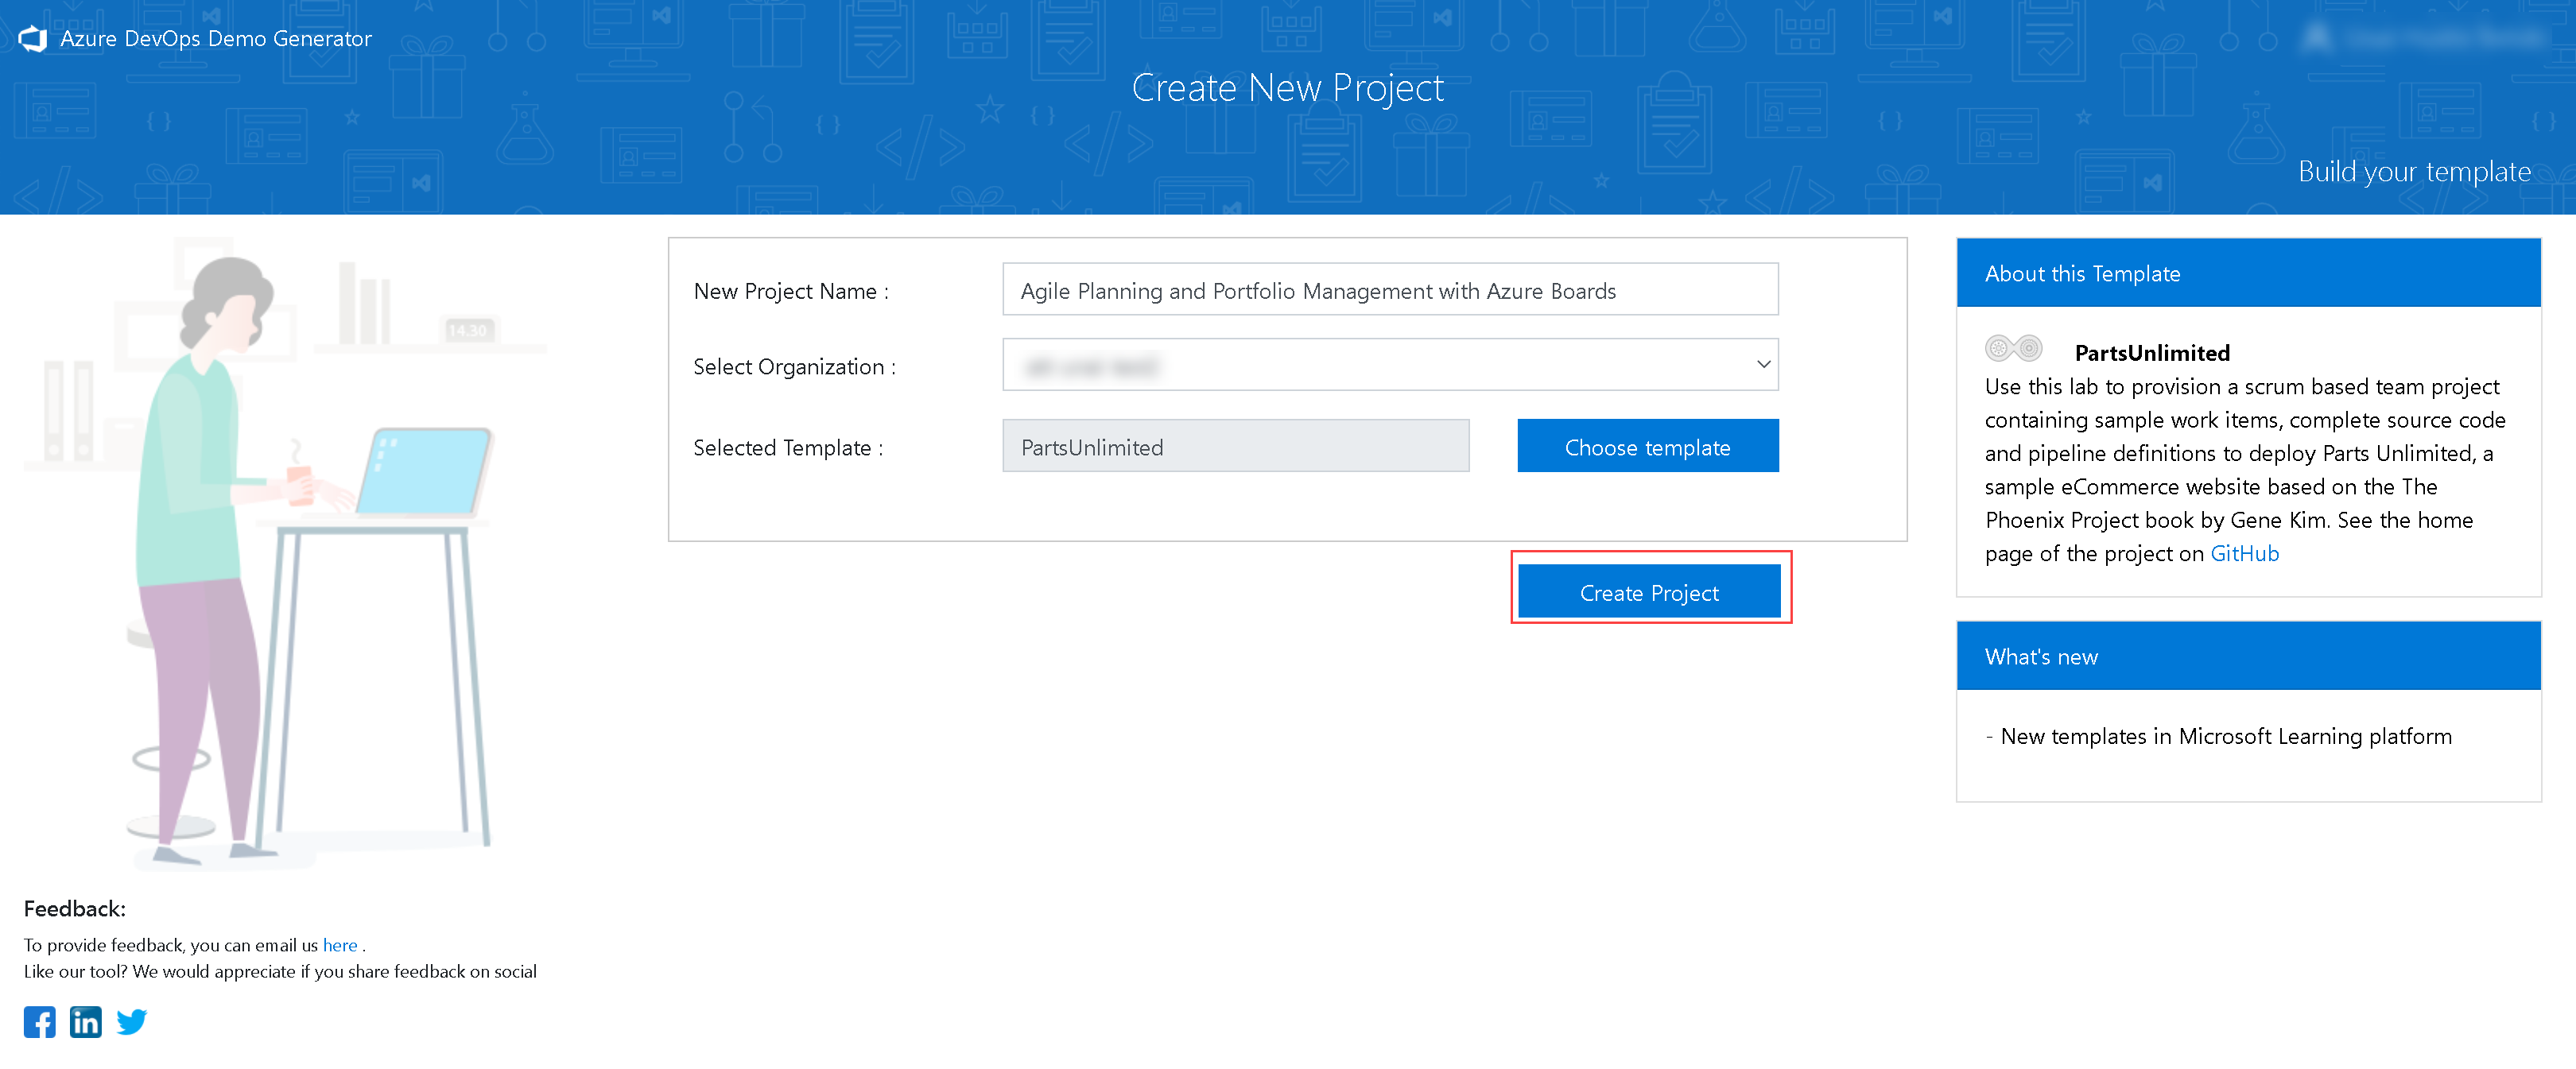 Azure DevOps Generator website. Clik on
"Create project"